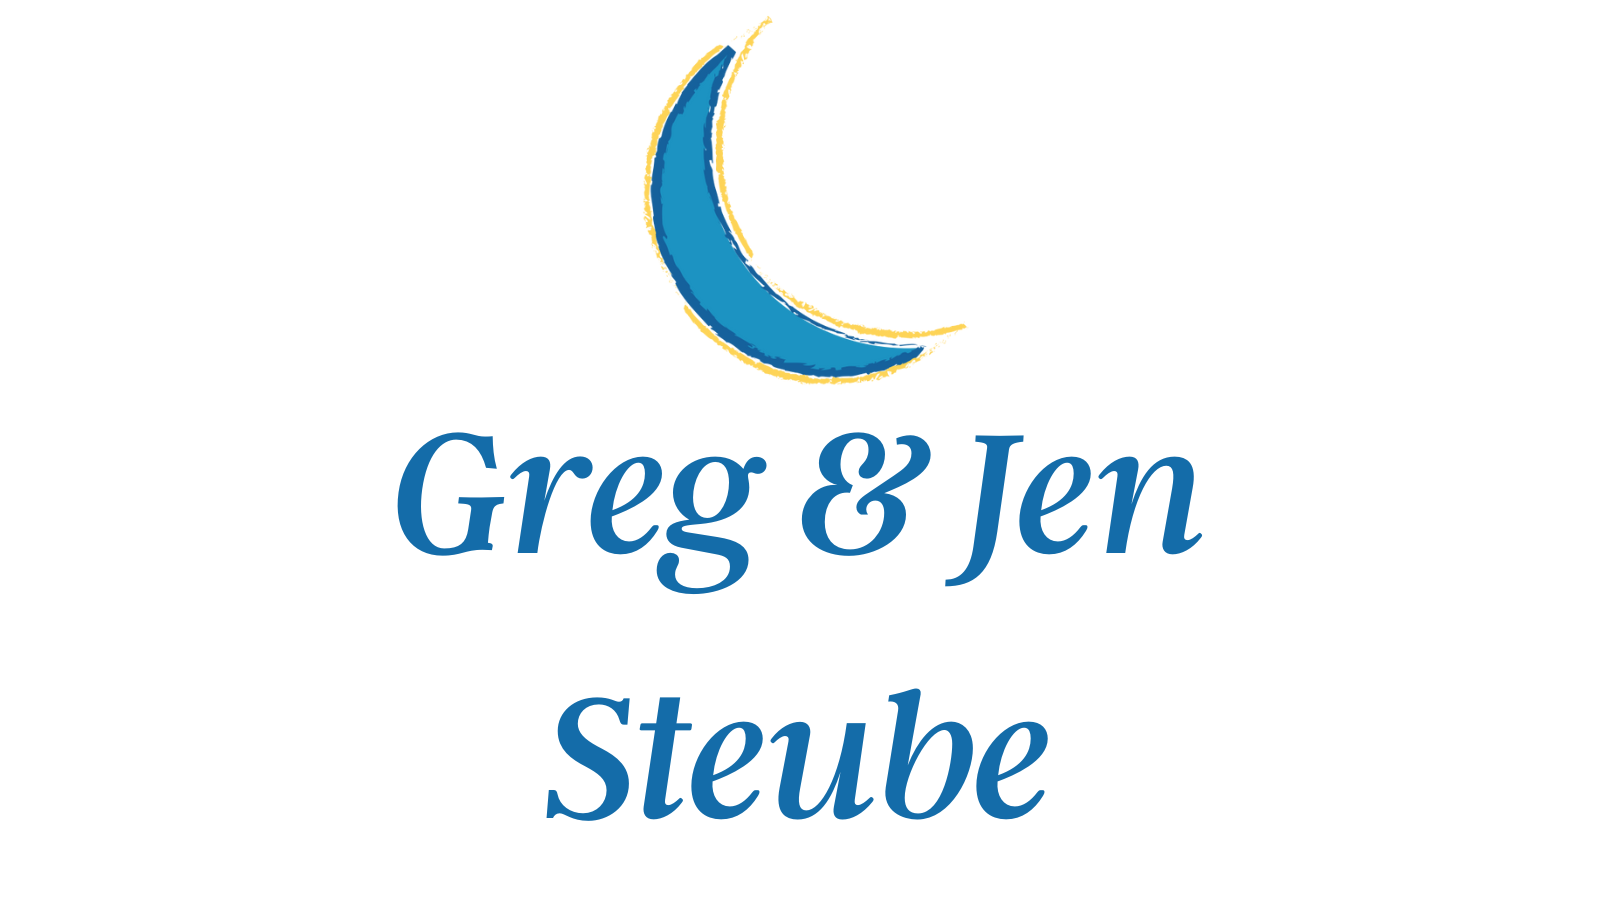 Greg & Jen Steube